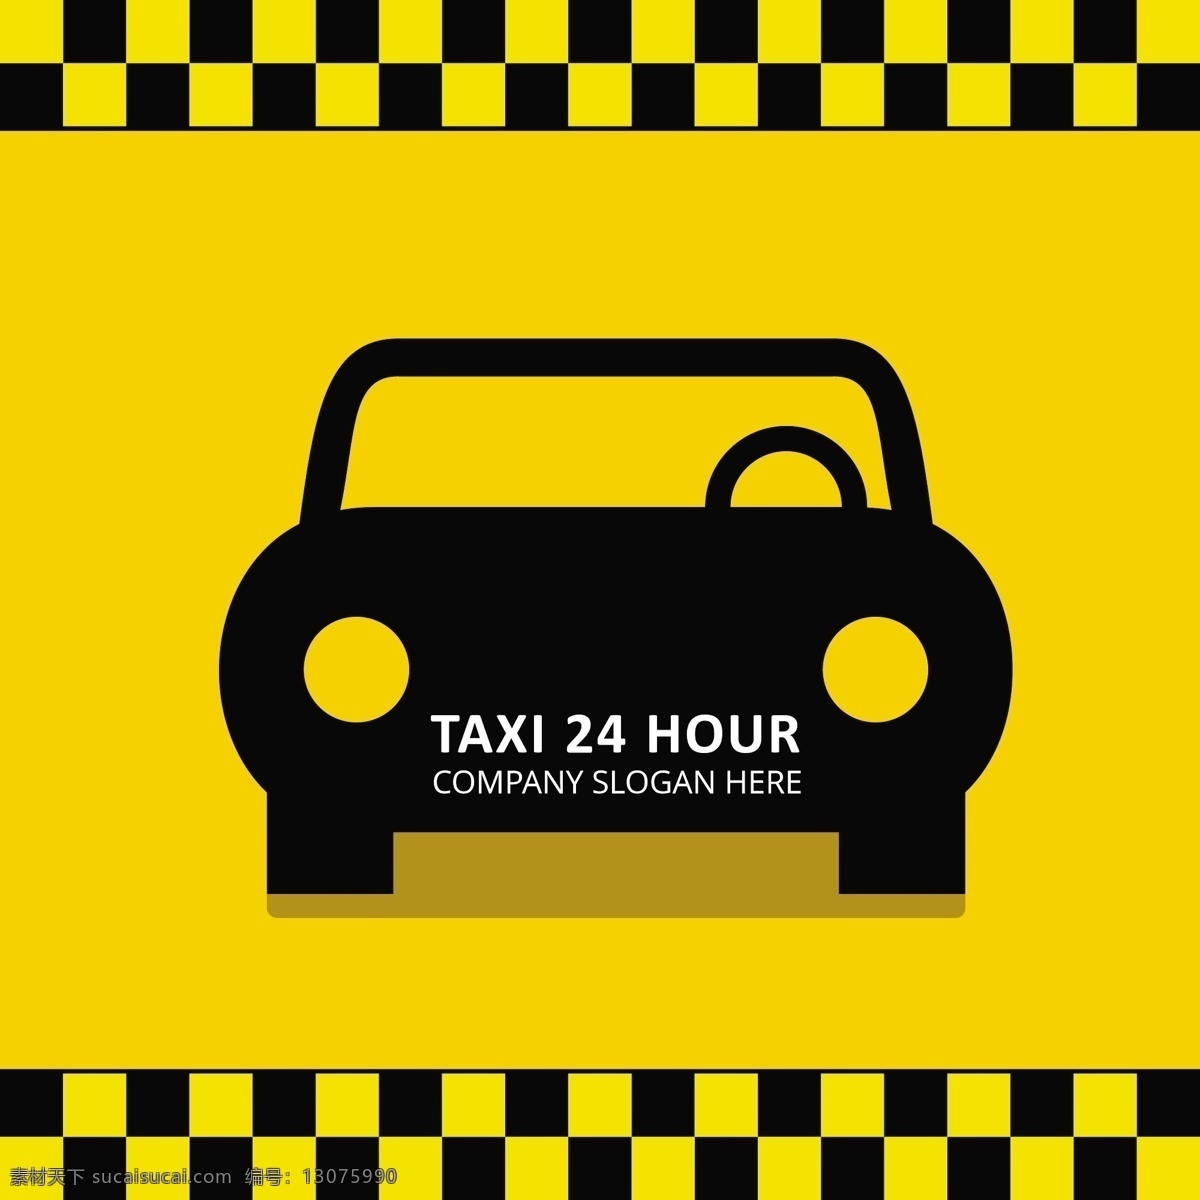 出租车 服务 标志 模板 商务 汽车 抽象 卡片 旅游 城市 图标 灯光 按钮 时钟 道路 网络 剪影 黄色 街道 交通 呼叫